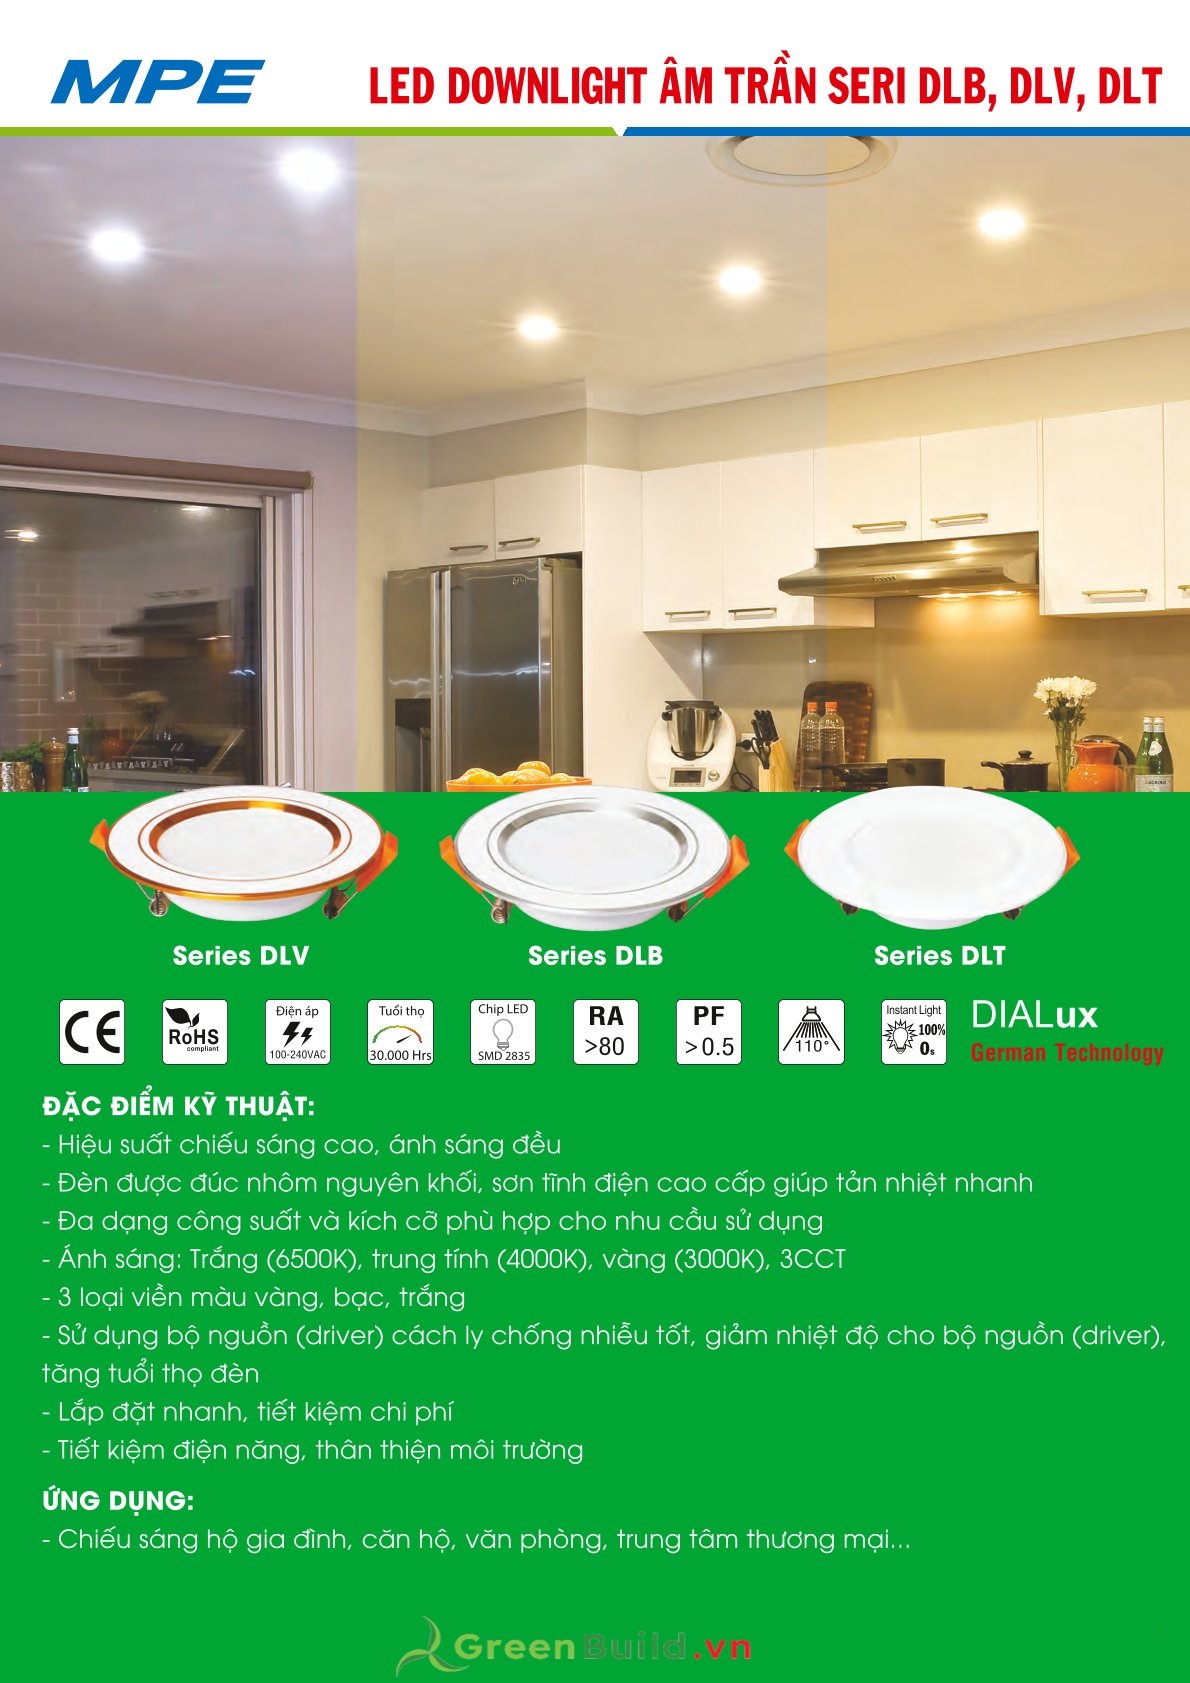 Greenbuild cung cấp đèn LED downlight MPE DLV 5W [DLV-5T/V/N], đèn downlight âm trần chất lượng cao, đèn LED MPE do Greenbuild cung cấp được bảo hành lâu dài